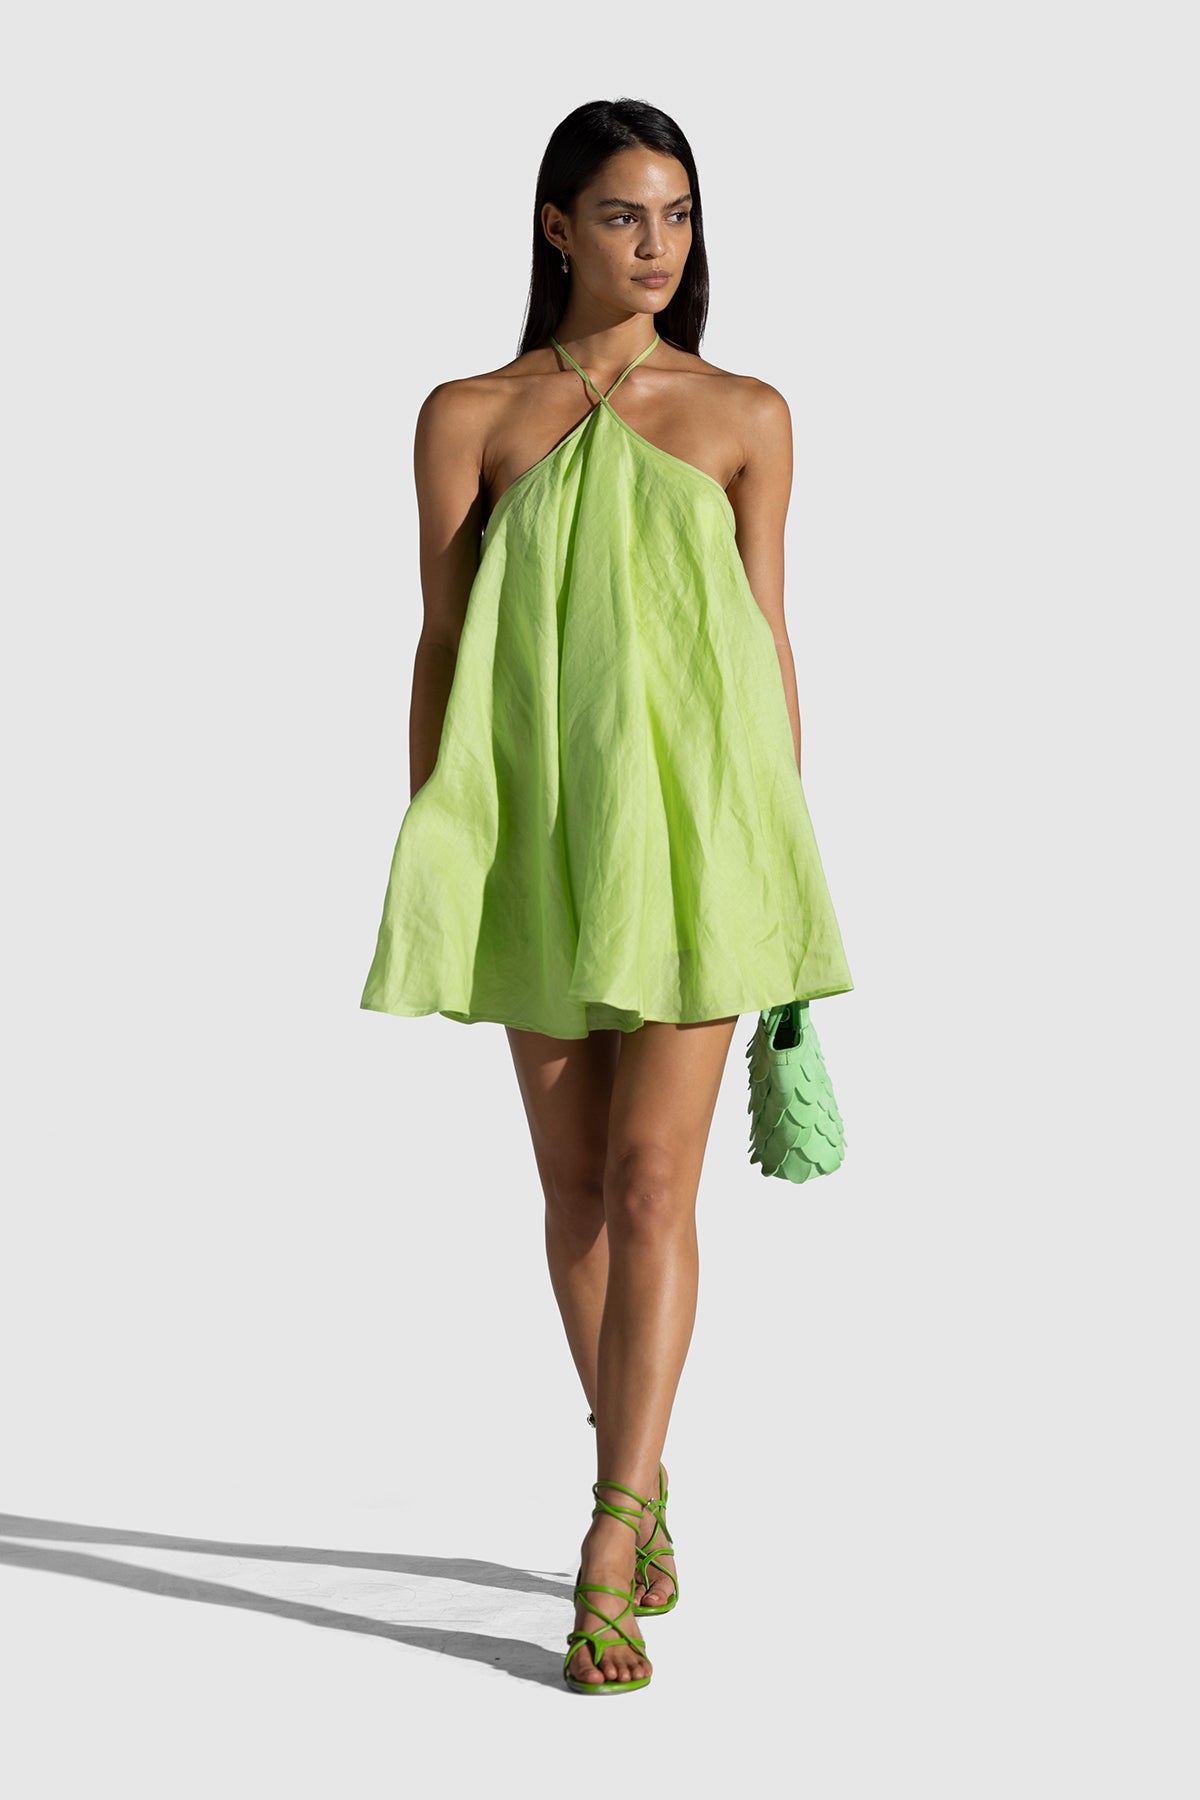 Lolana Dress - Lime